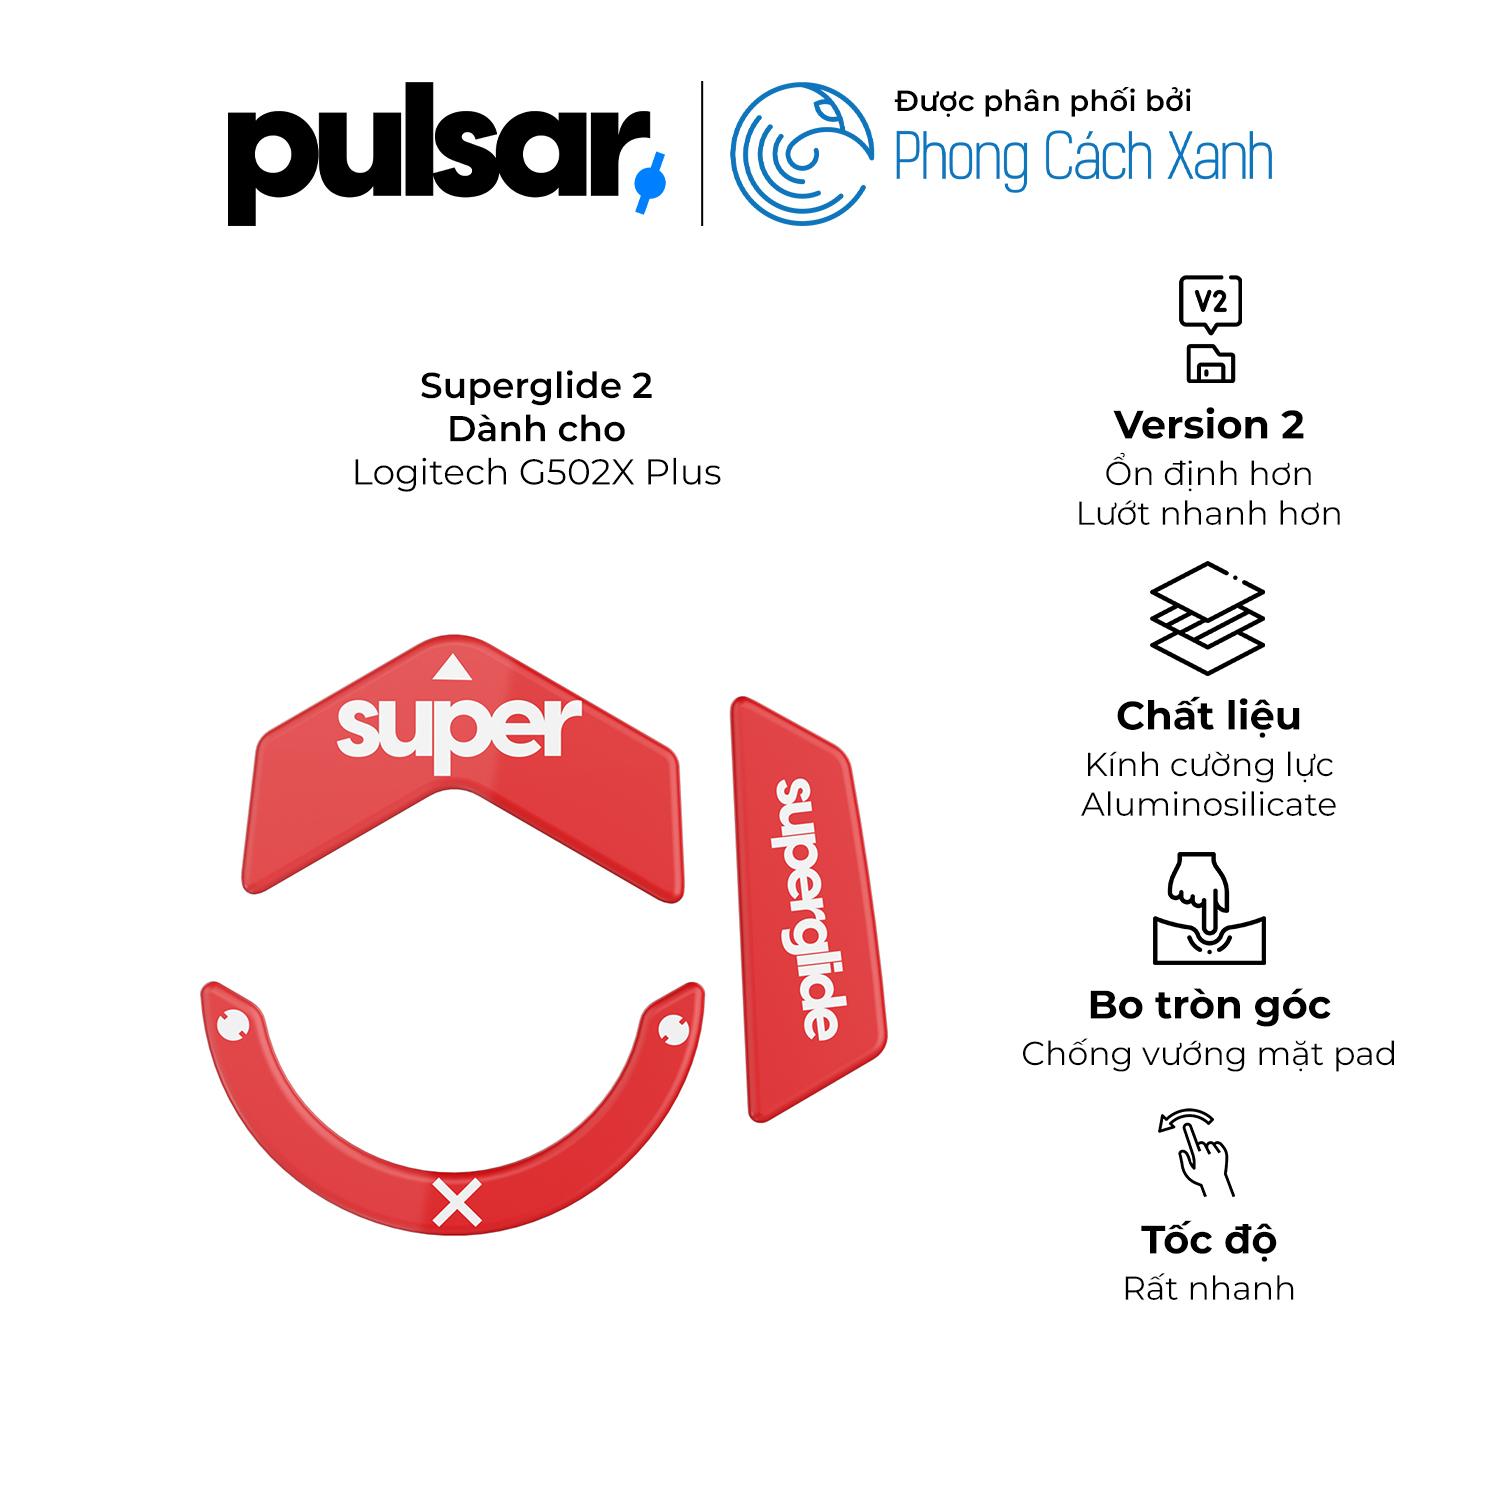 Feet chuột Pulsar Superglide 2 - Dành cho Logitech G502X Plus - Hàng Chính Hãng